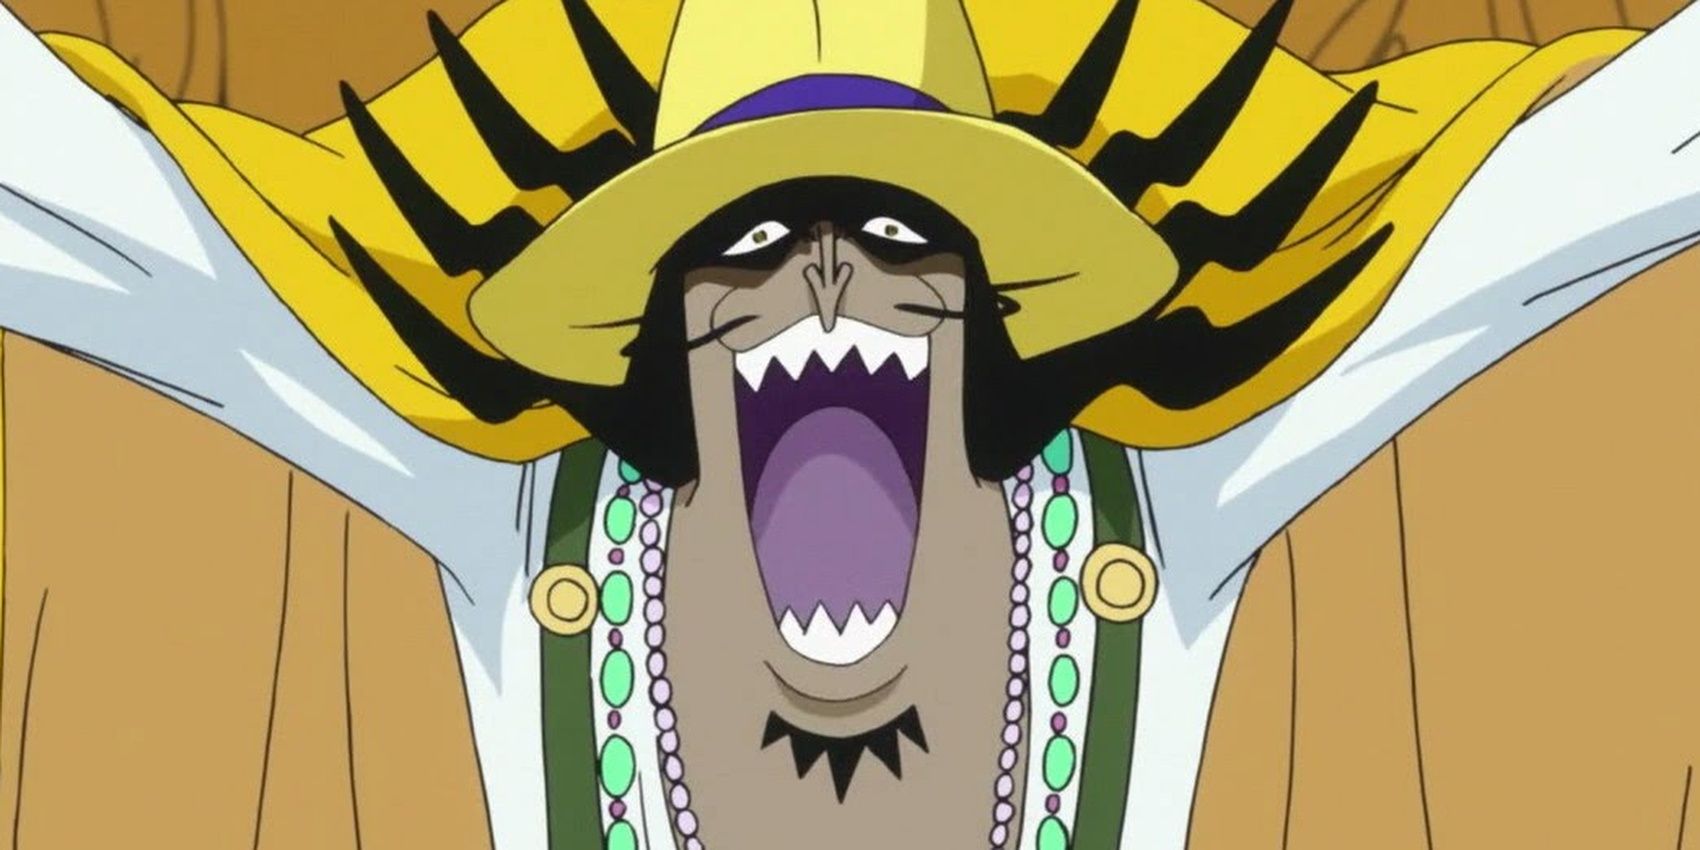 Vander Decken laughing in One Piece.